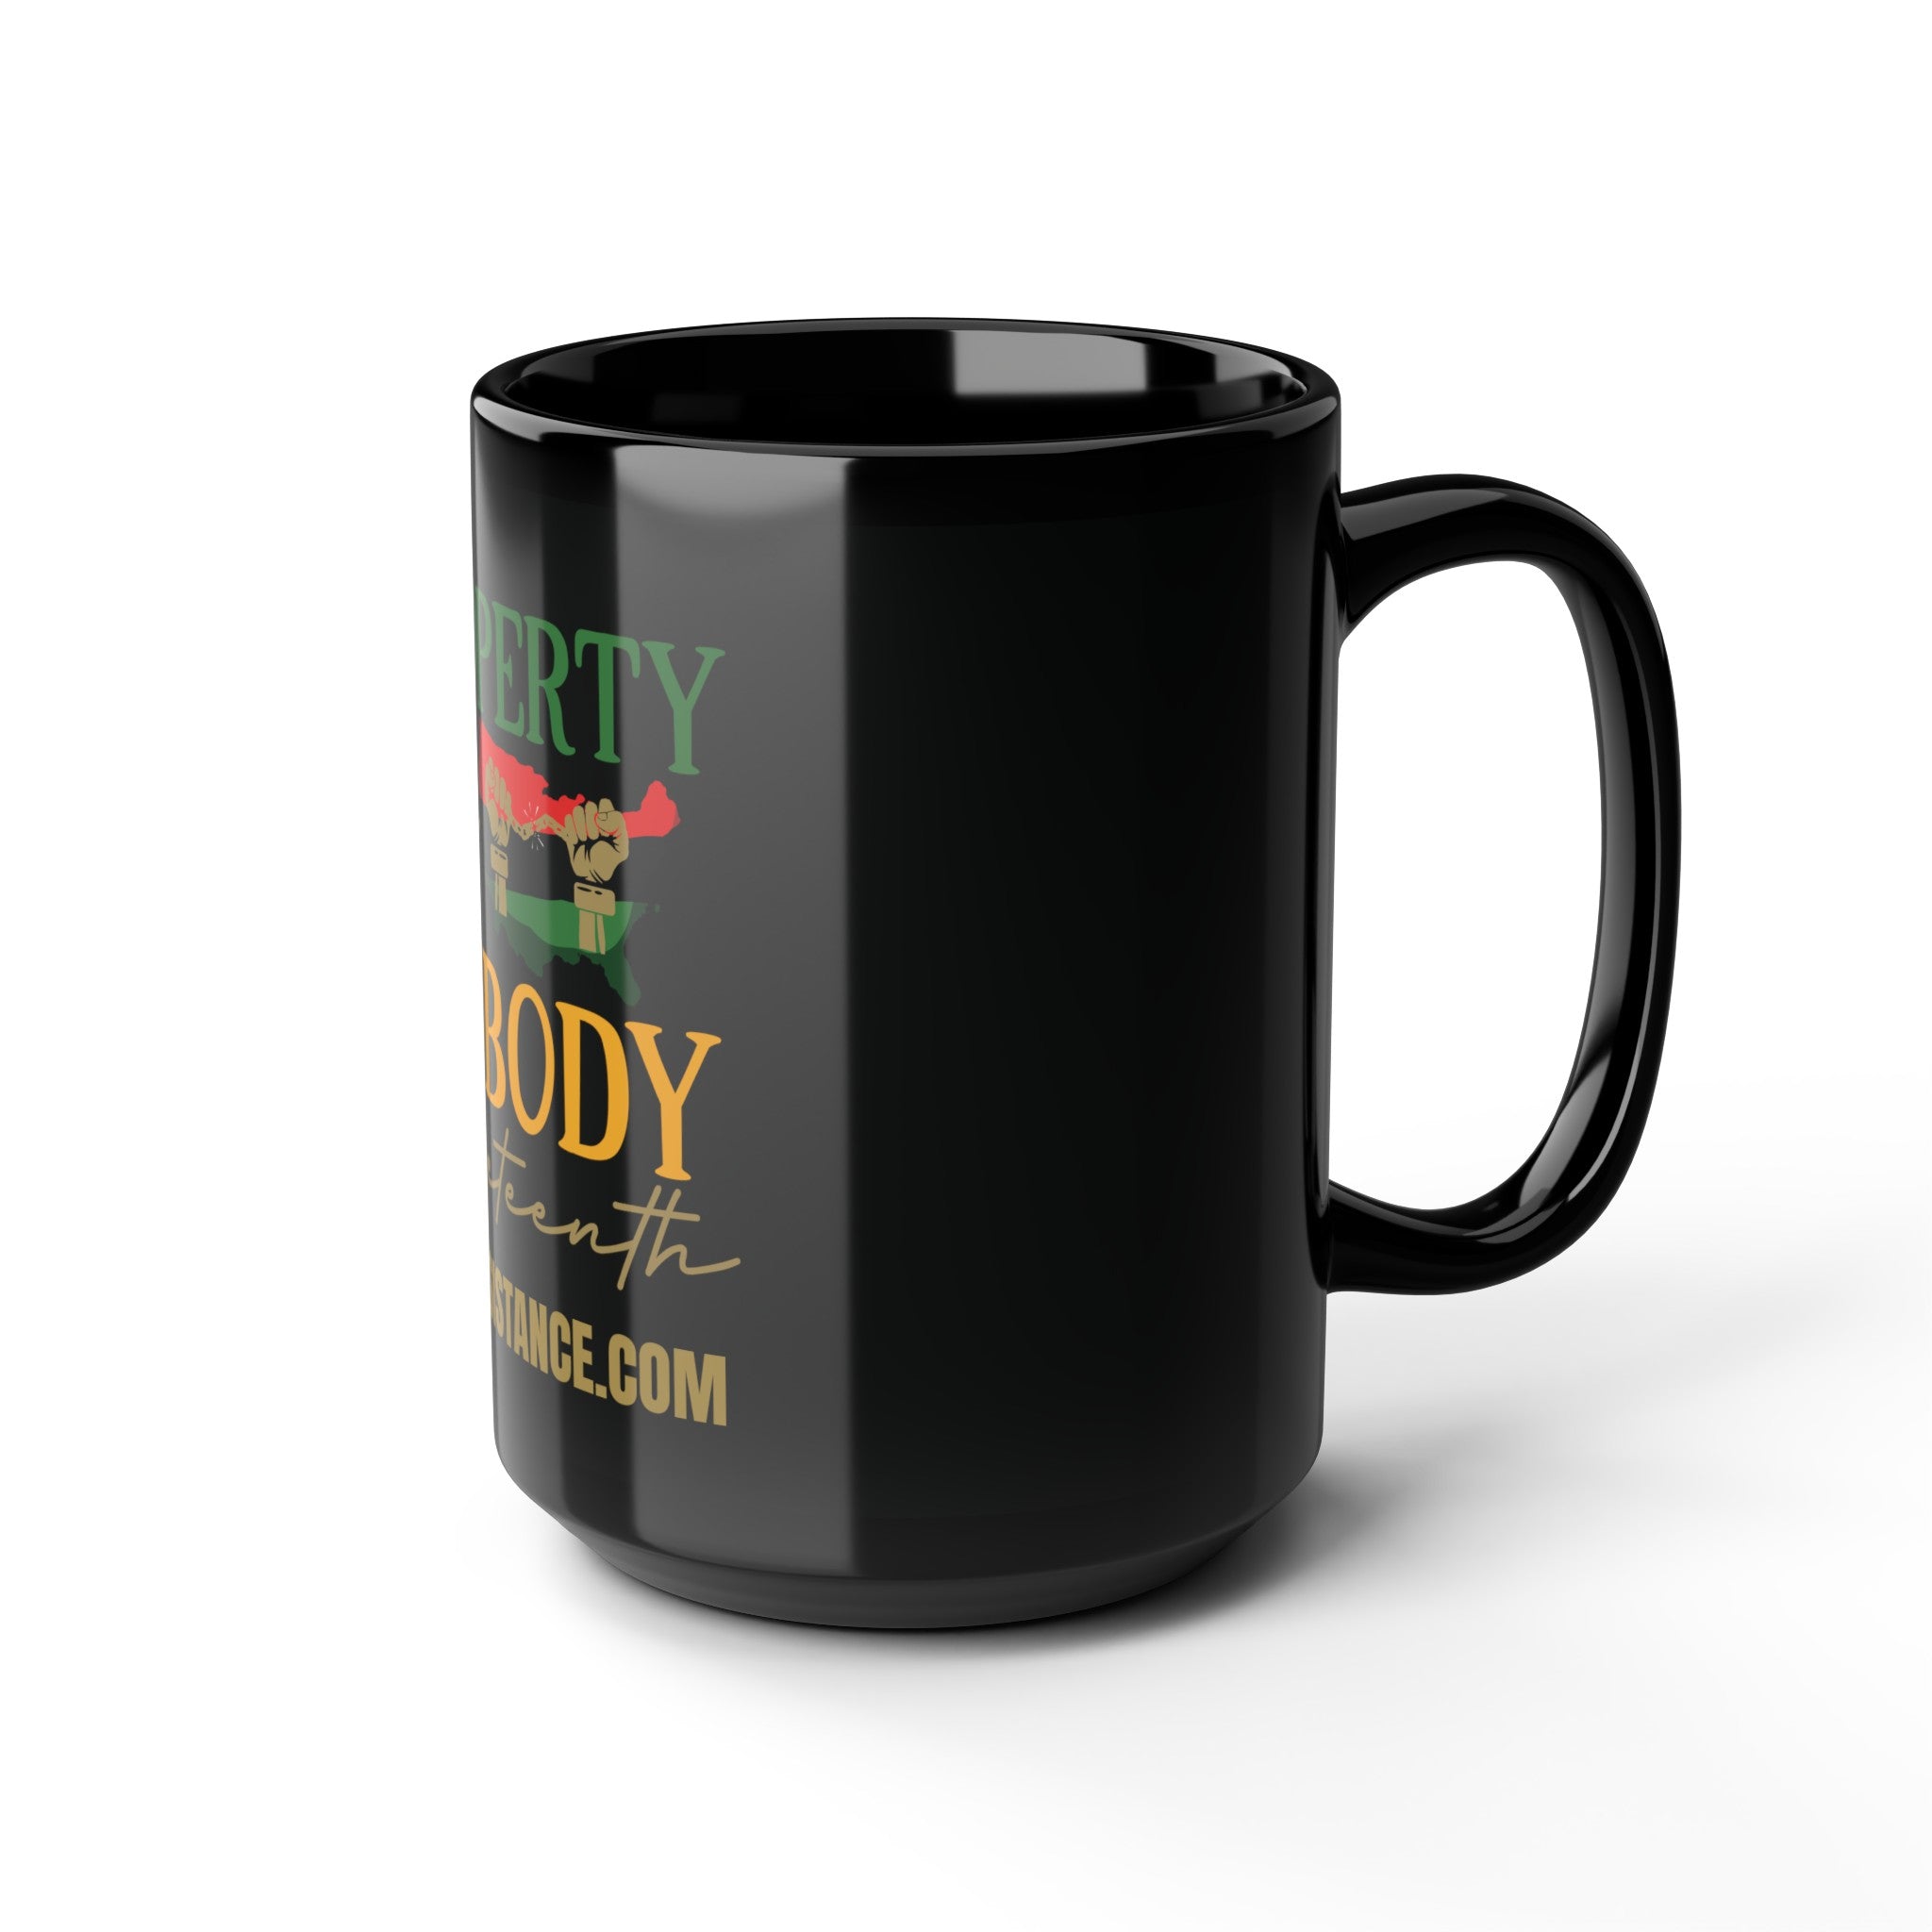 Property of Nobody Special Edition Black Ceramic Mug (15 oz.)